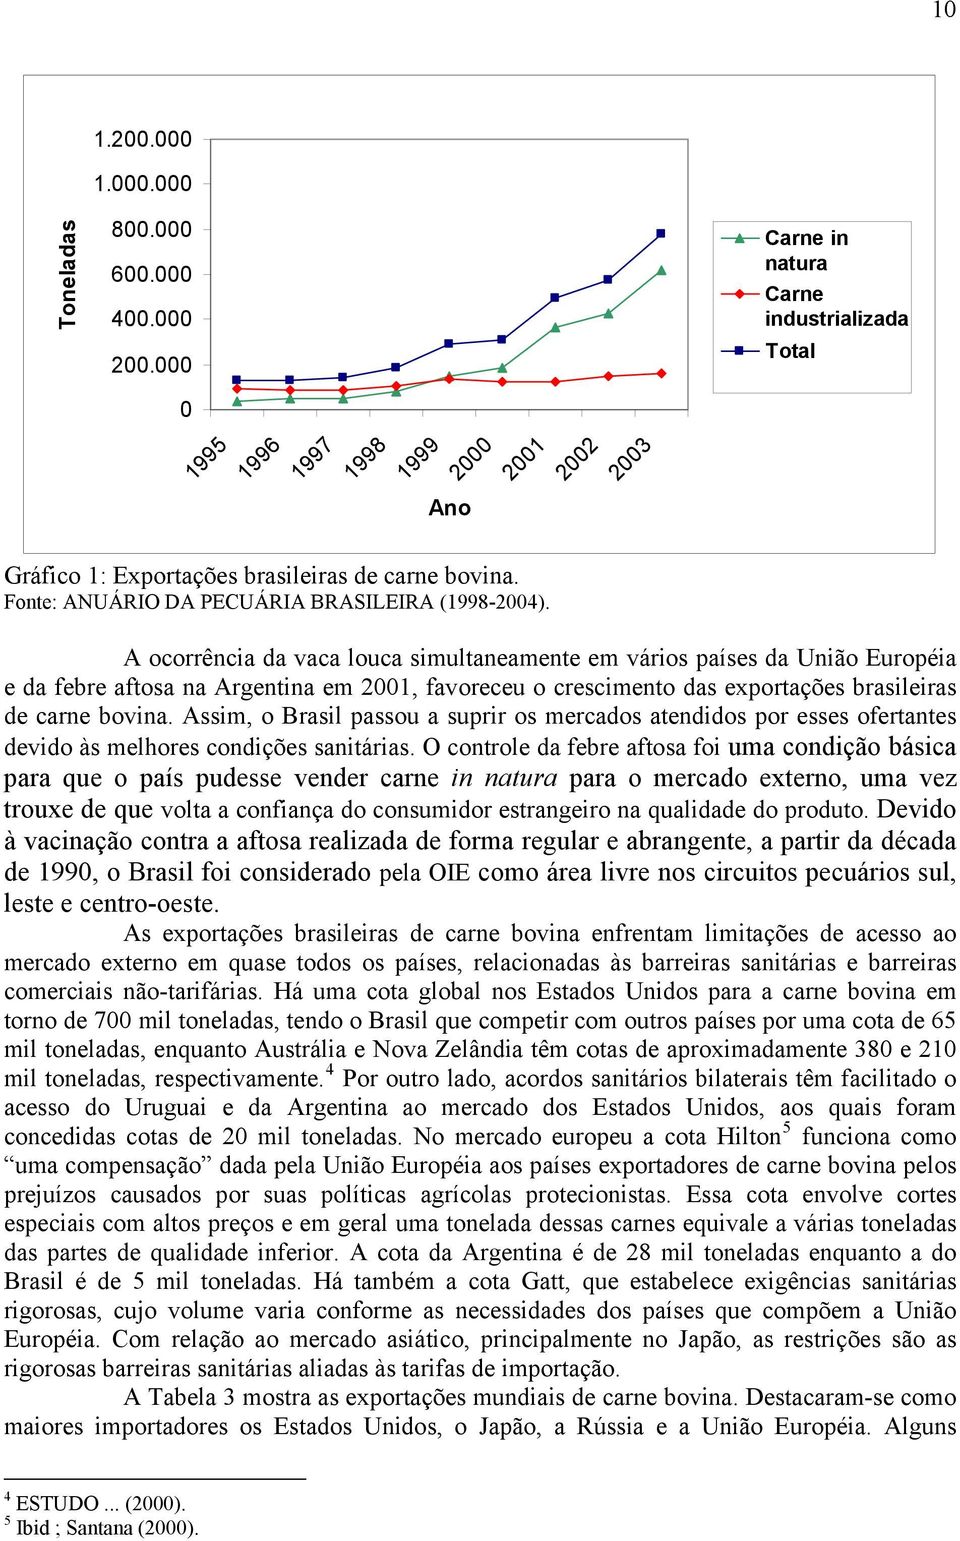 A ocorrênca da vaca louca smultaneamente em város países da Unão Européa e da febre aftosa na Argentna em 2001, favoreceu o crescmento das exportações brasleras de carne bovna.